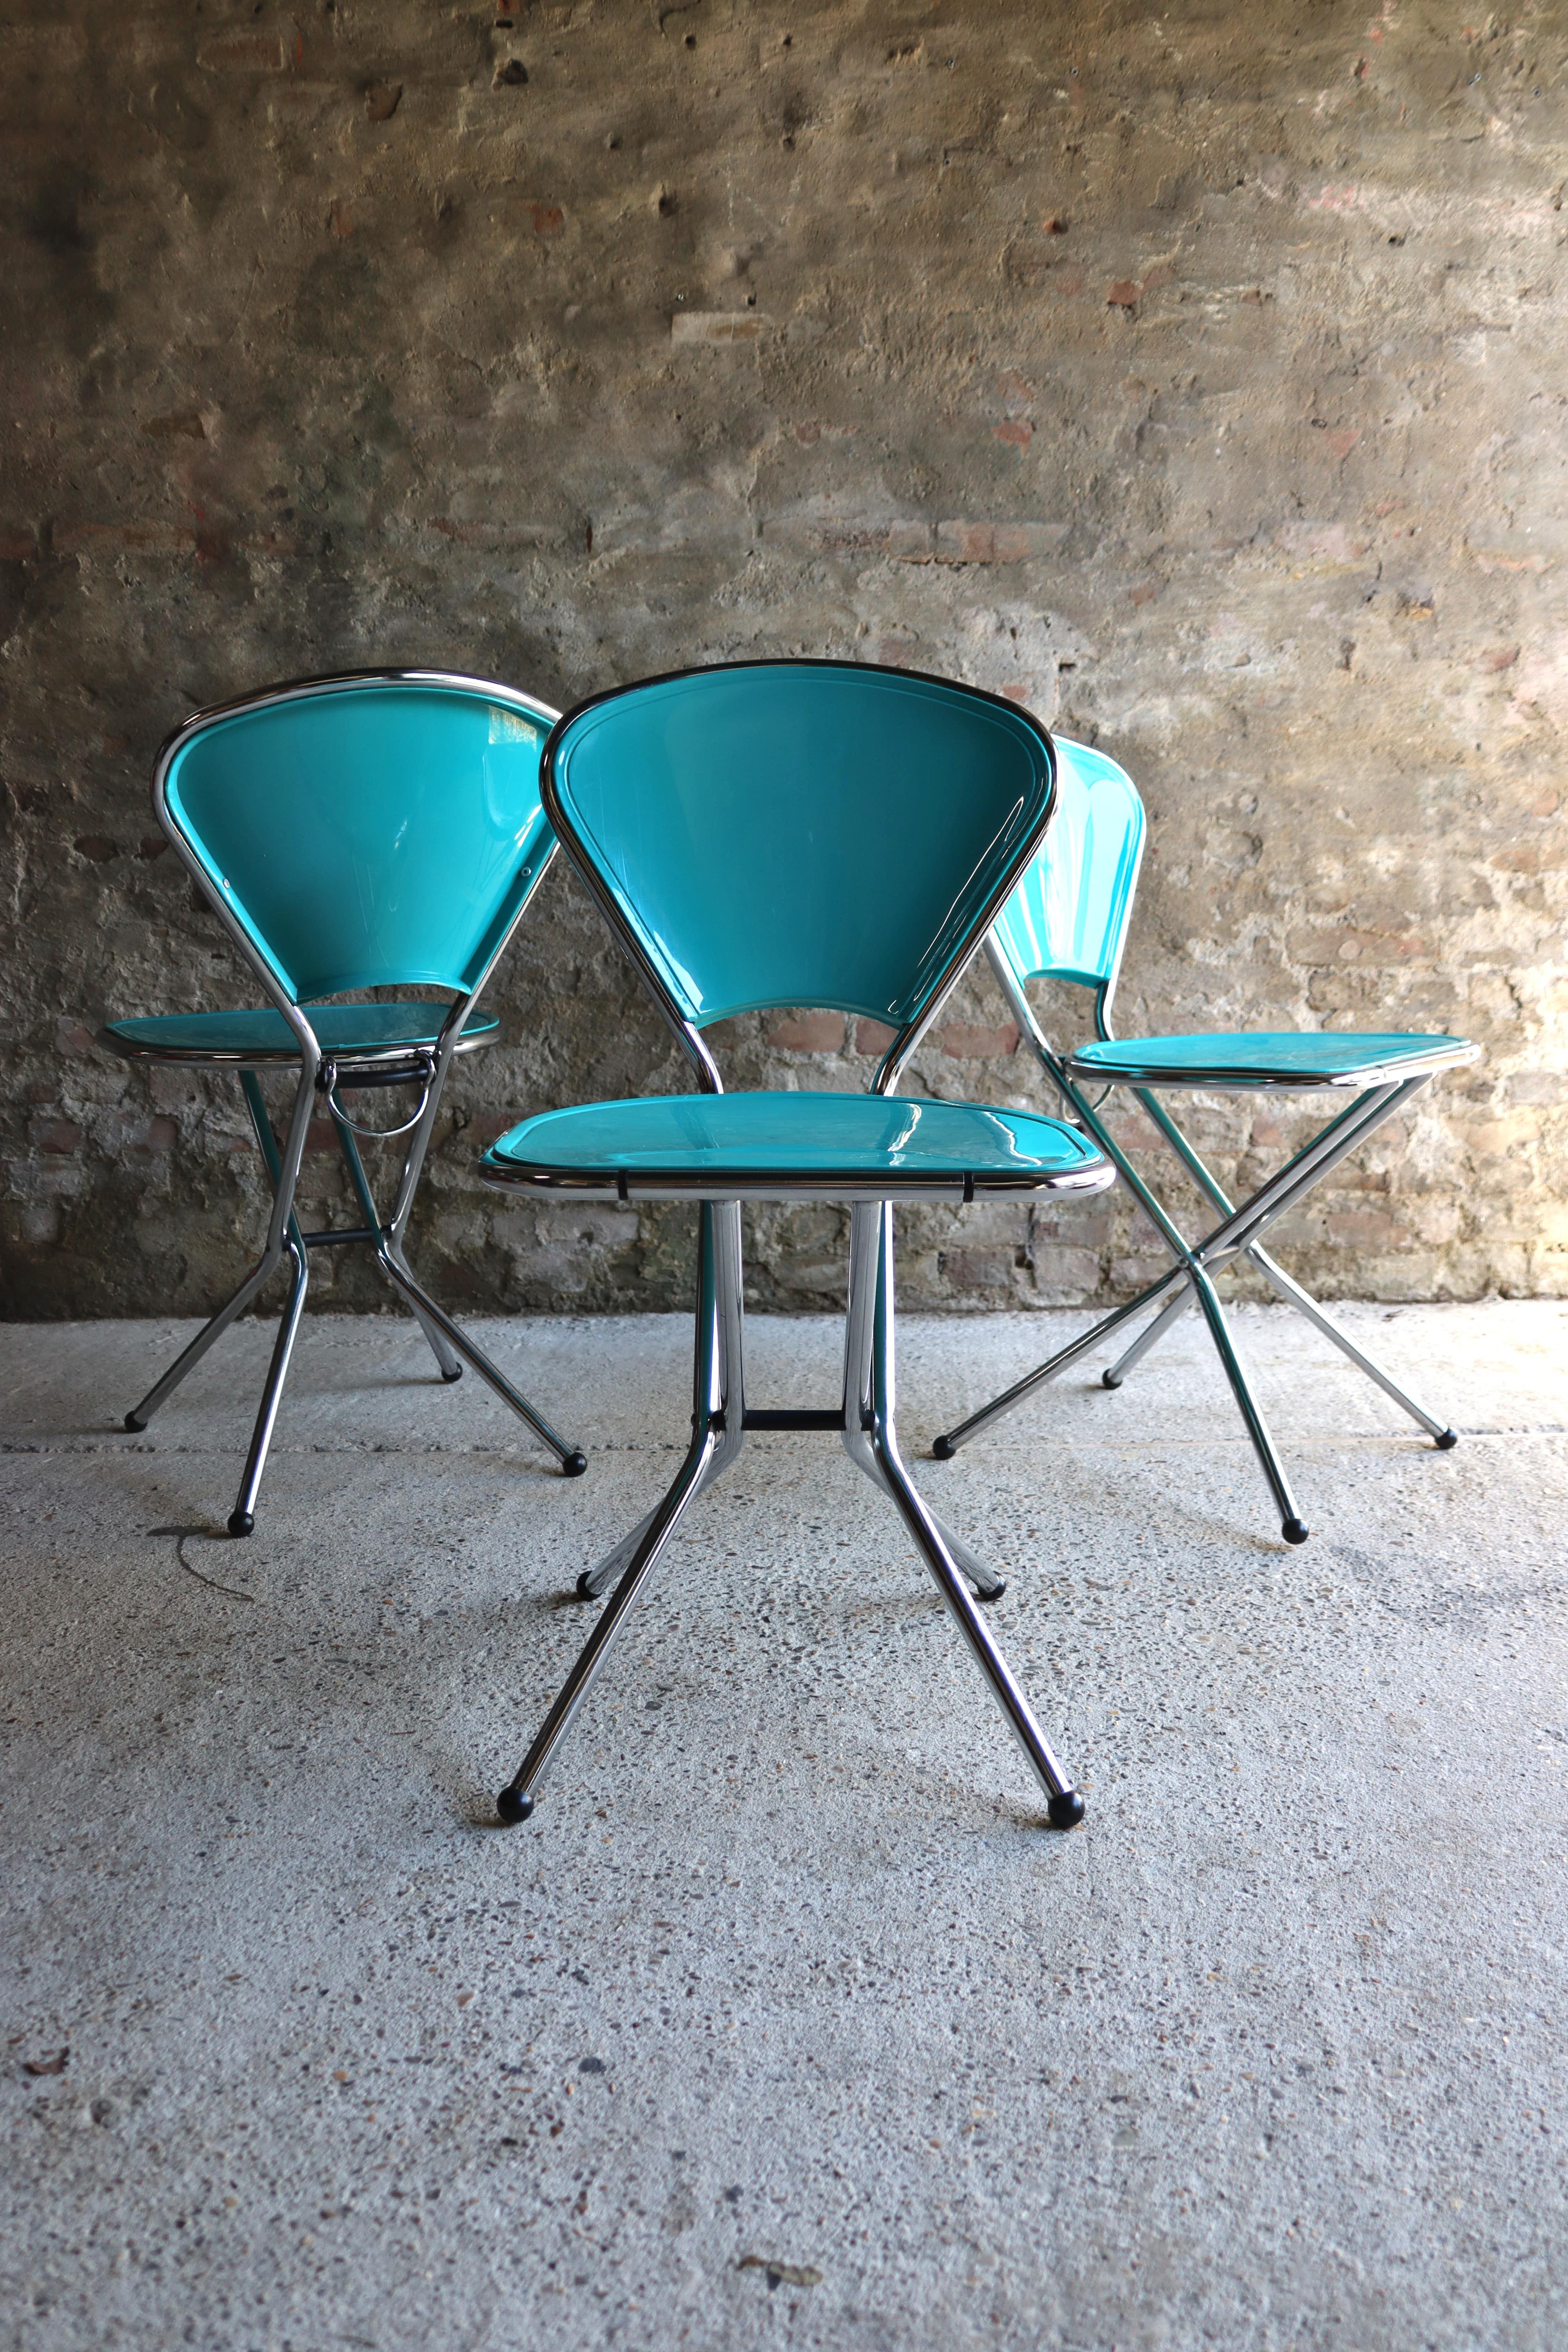 Diese coolen Klappstühle wurden von Niels Gammelgaard für IKEA entworfen und waren ab 1987 für kurze Zeit auf dem Markt. Diese Stühle sind heutzutage sehr selten. Wir bieten 3 Klappstühle an. Sie sind alle in gutem Zustand, aber einer der Stühle hat